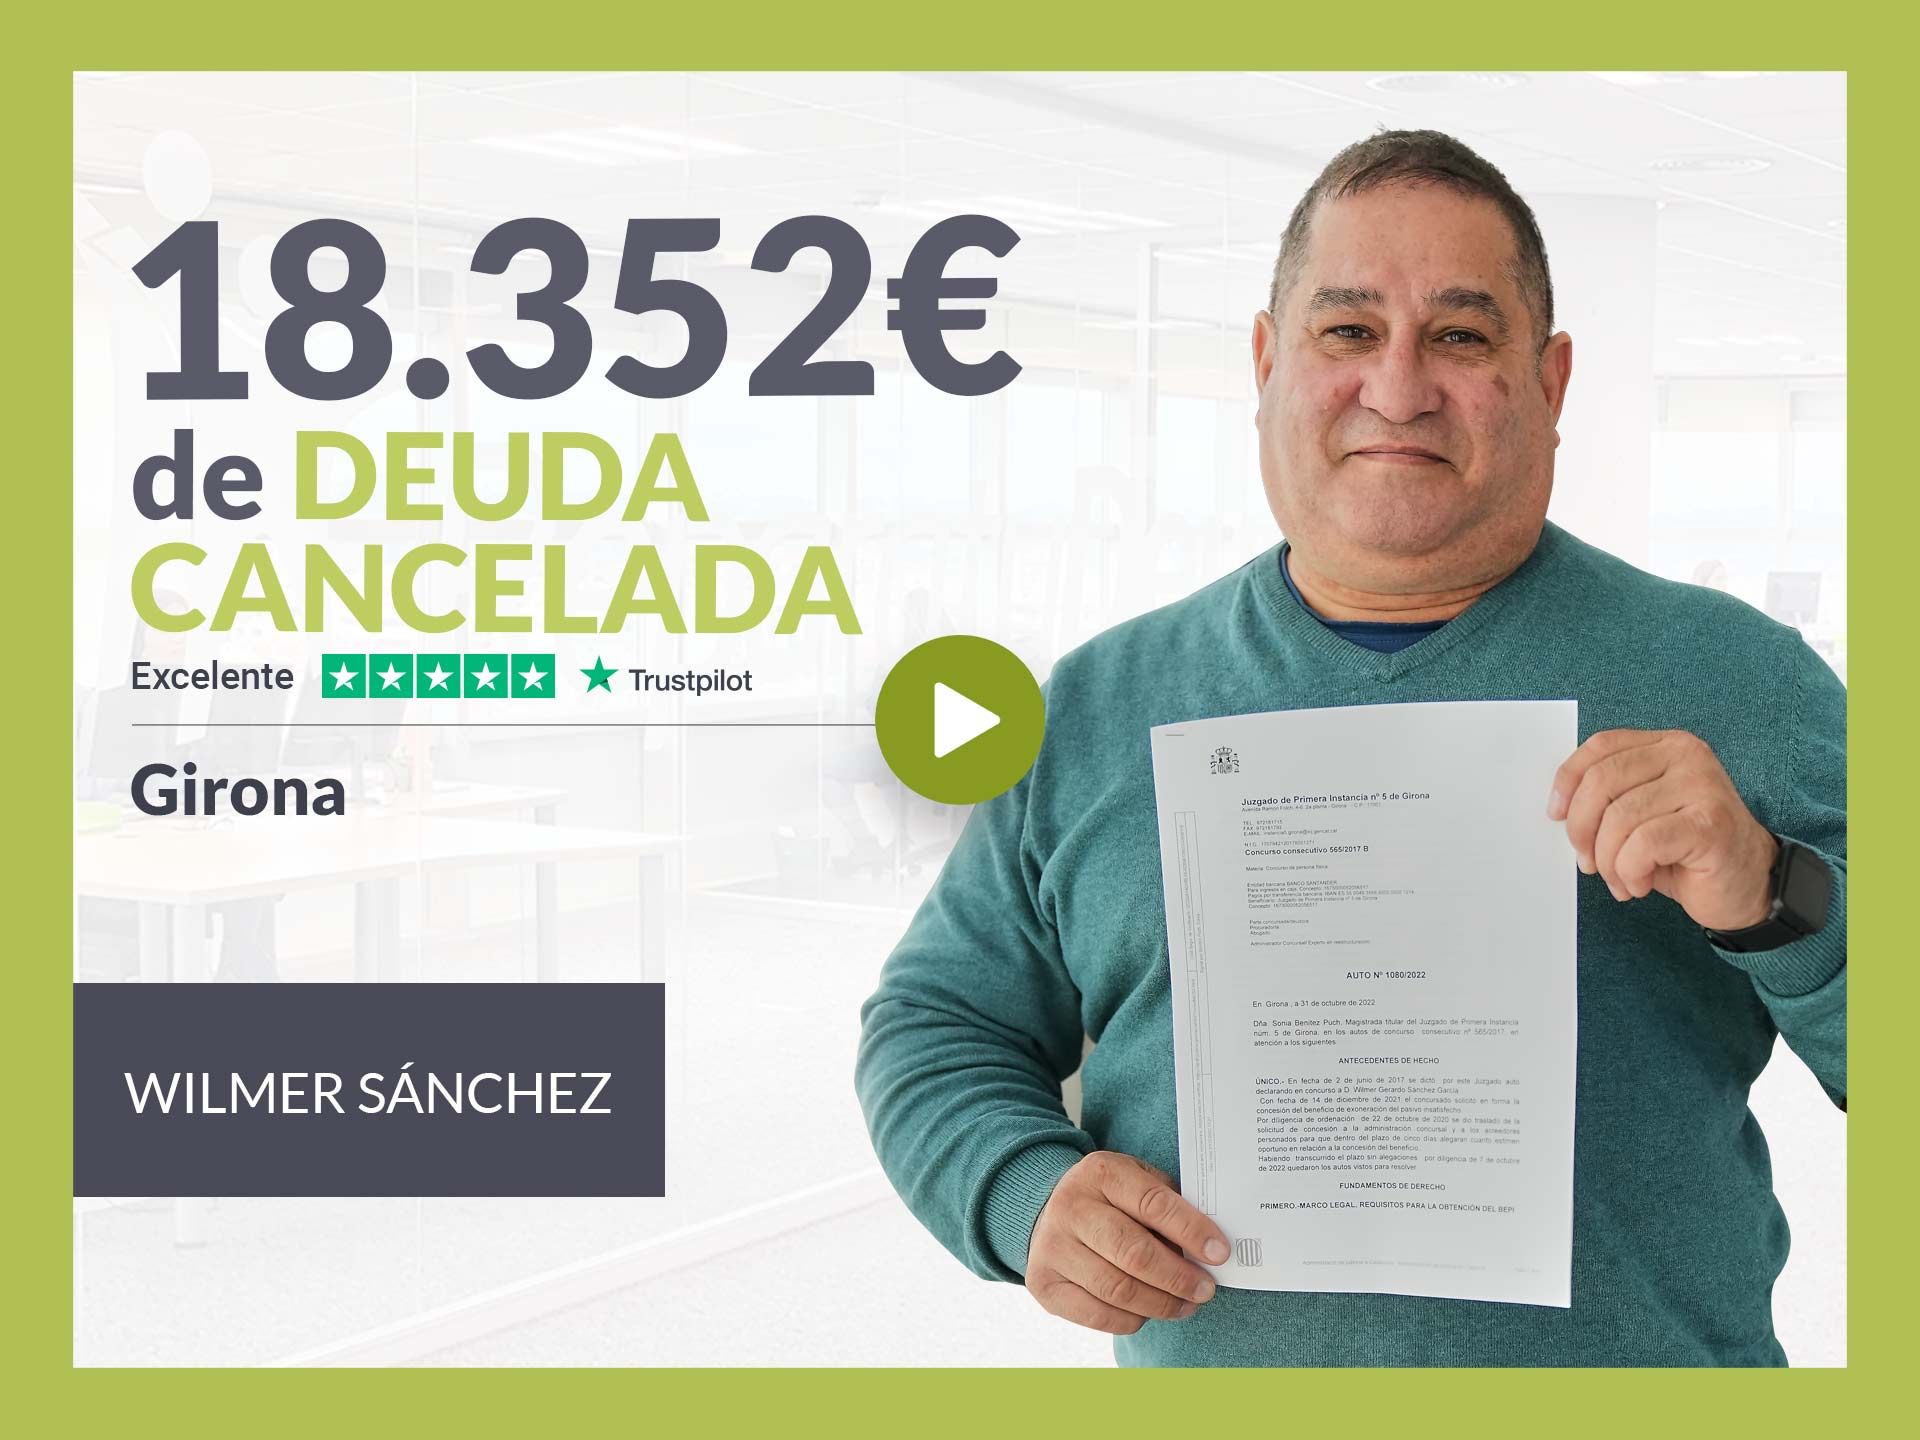 Repara tu Deuda Abogados cancela 18.352? en Girona (Catalunya) con la Ley de Segunda Oportunidad